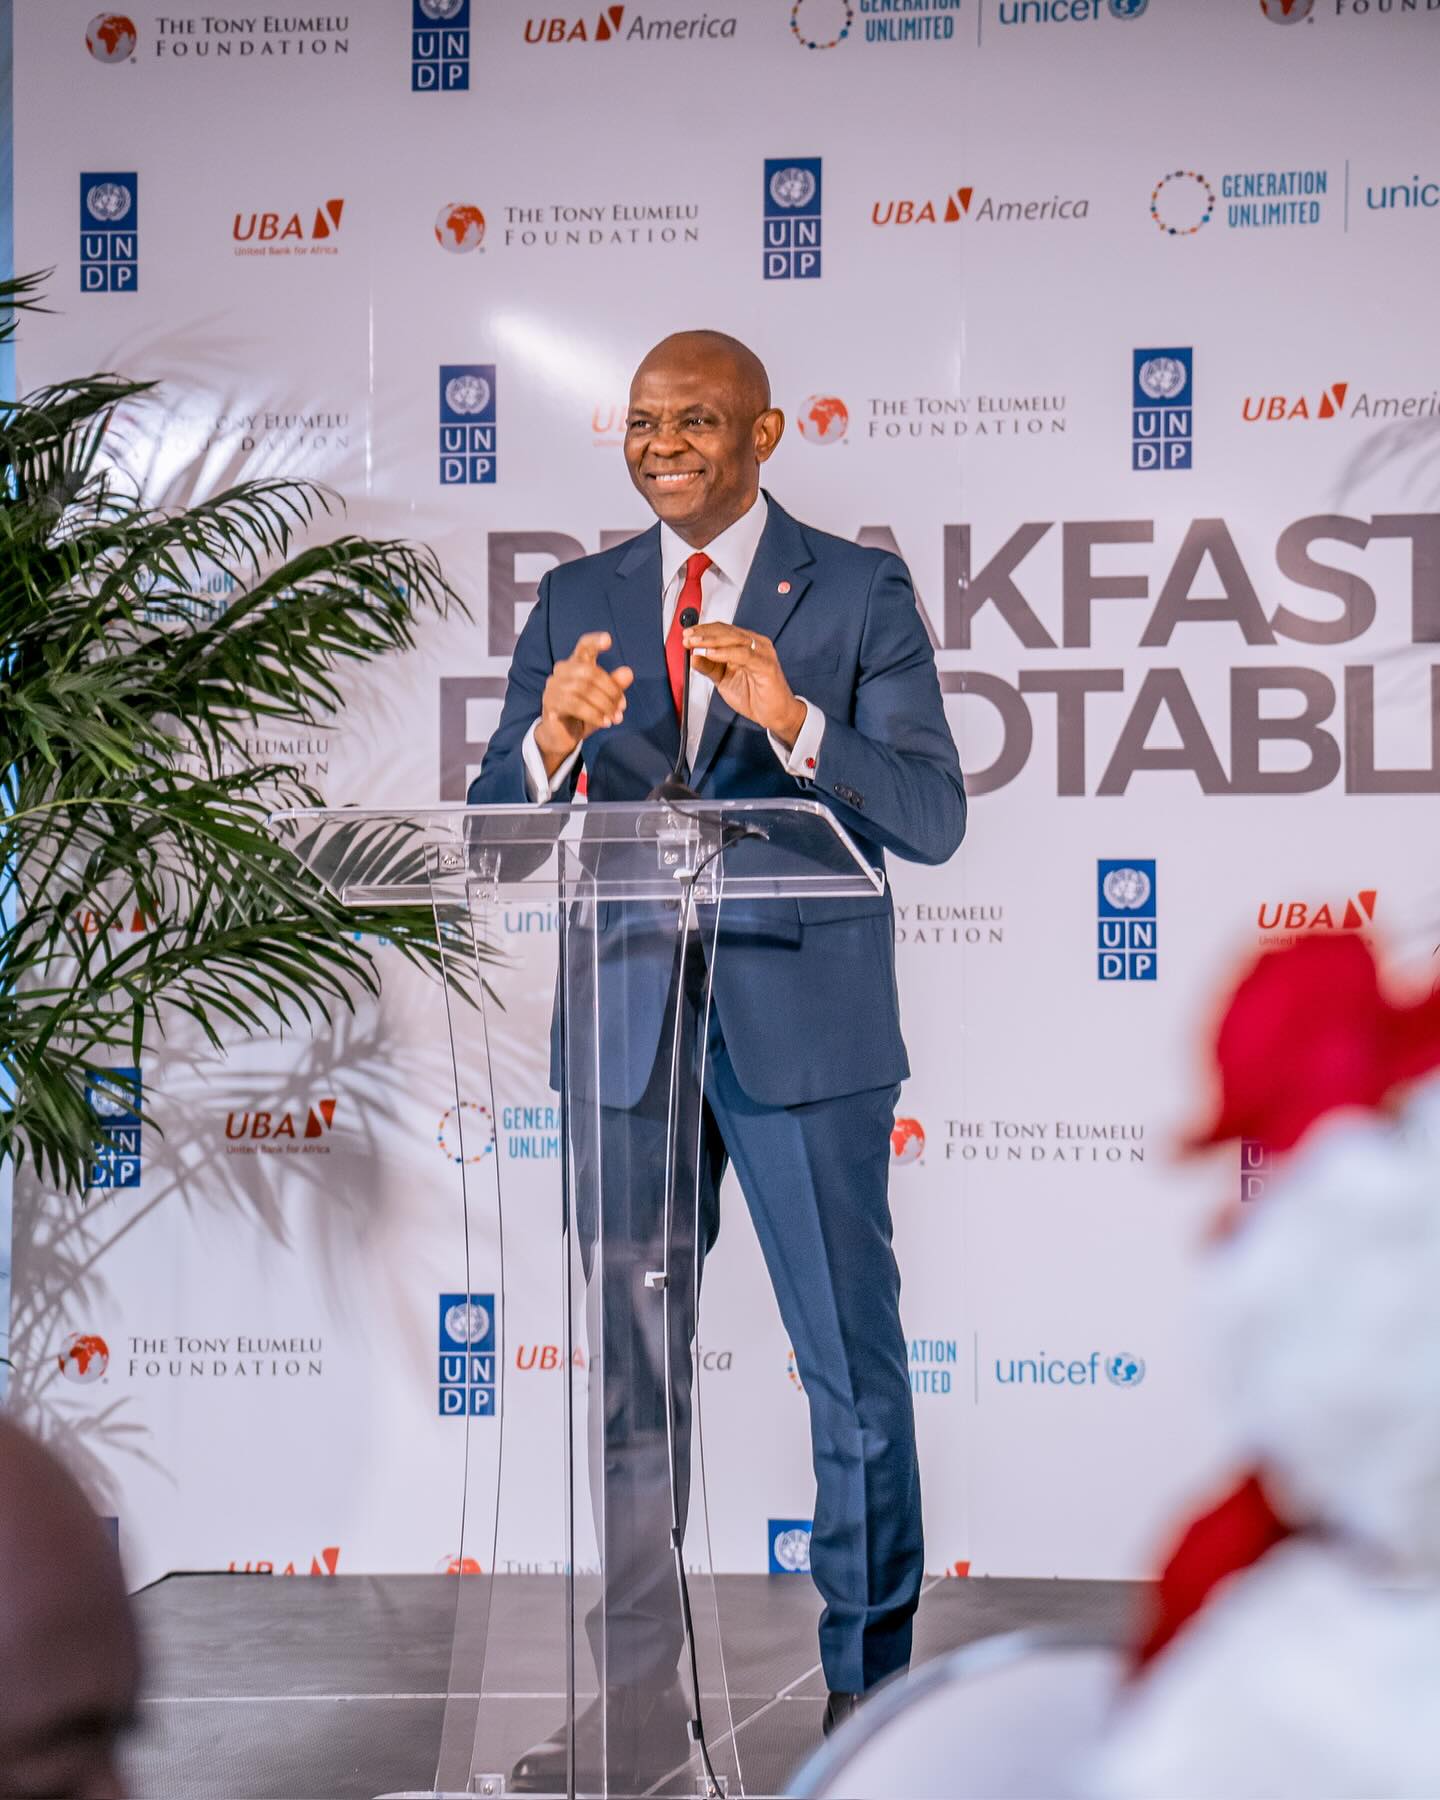 La Fondation Tony Elumelu, Generation Unlimited de l'UNICEF et la Fondation IKEA annoncent un partenariat pour lancer un programme d'entrepreneuriat vert qui répond à la triple crise planétaire